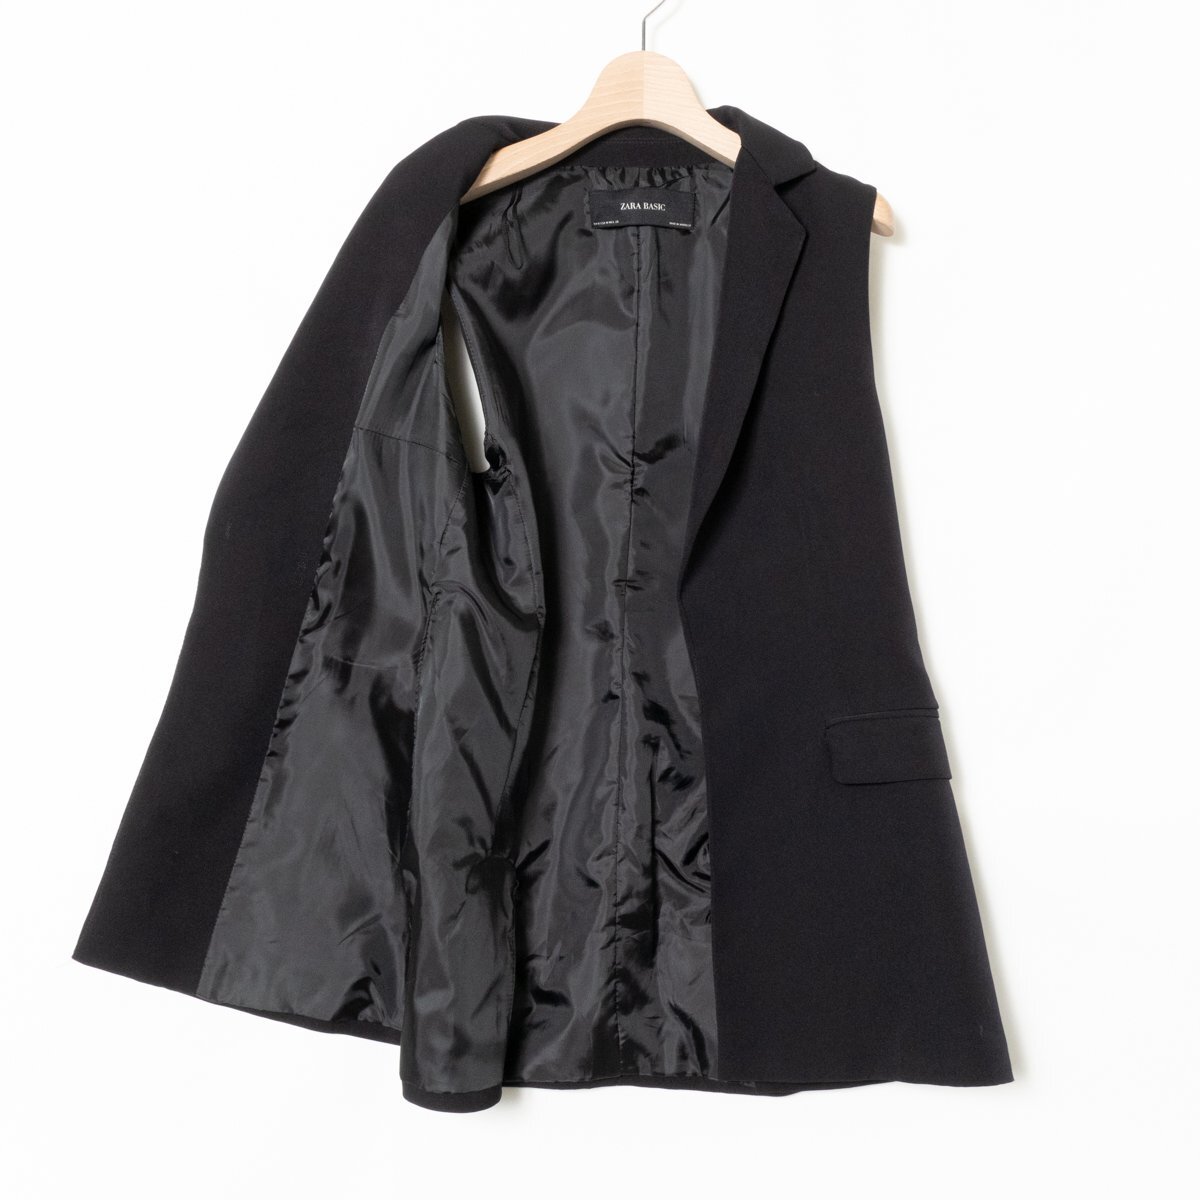 ZARA BASIC ザラ ベーシック ジレ ジャケット 上着 羽織 無地 Mサイズ ポリエステル100% ブラック 黒 綺麗め モード カジュアル_画像5